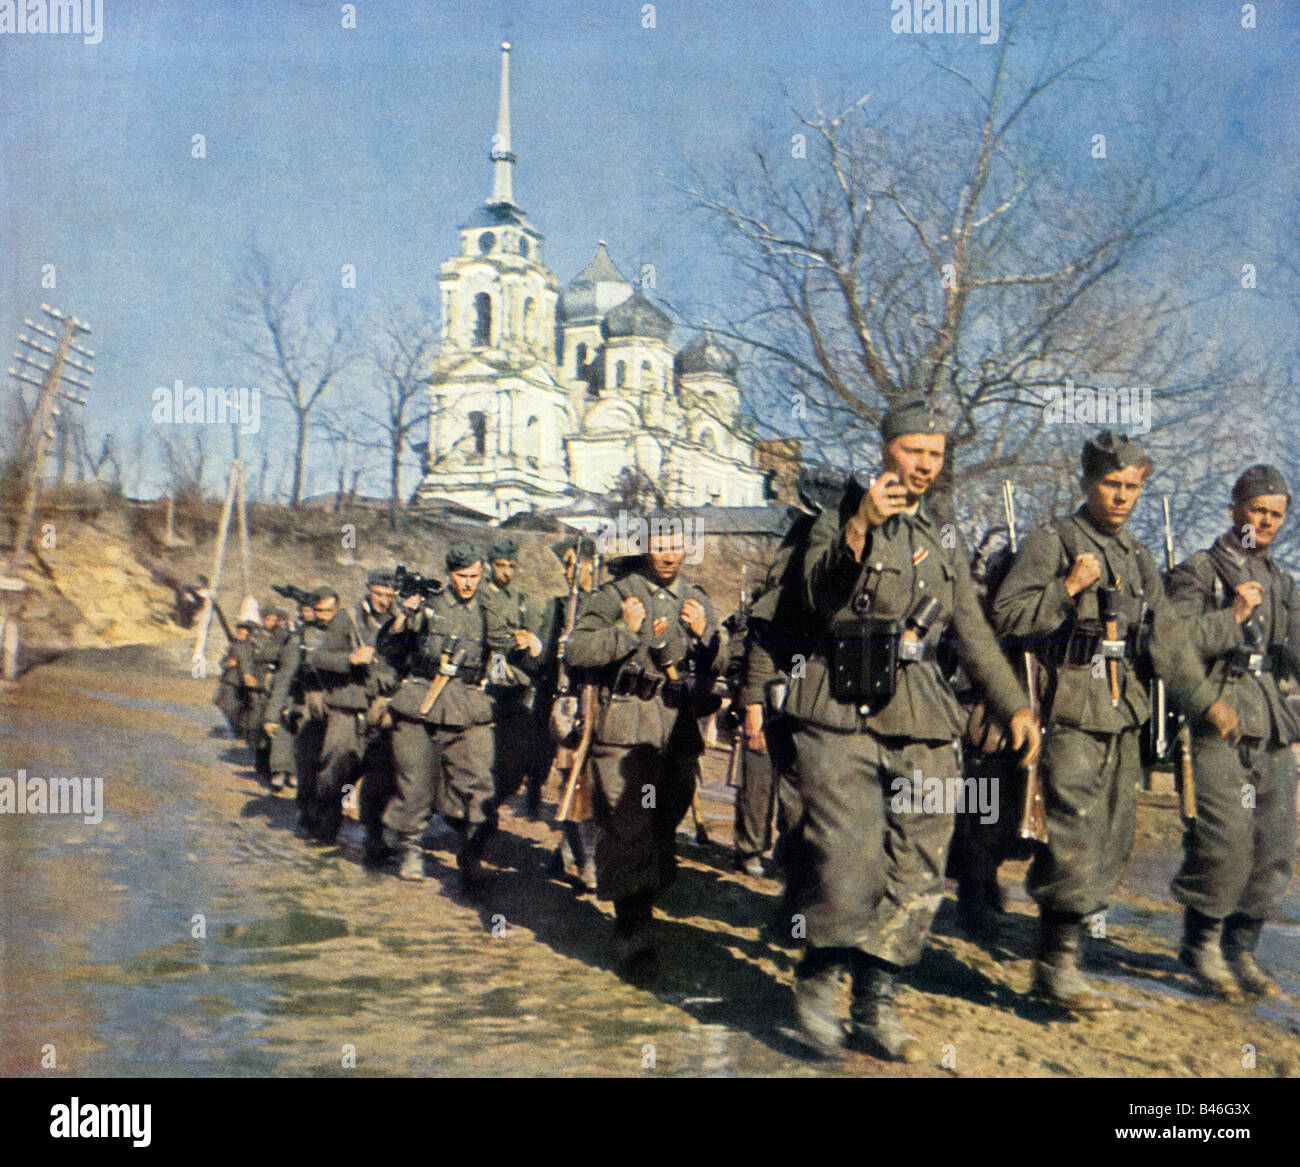 La fanteria della Wehrmacht anticipo Esercito Tedesco granatieri marciare in avanti sul Fronte Orientale in campagna russa in WW II Foto Stock